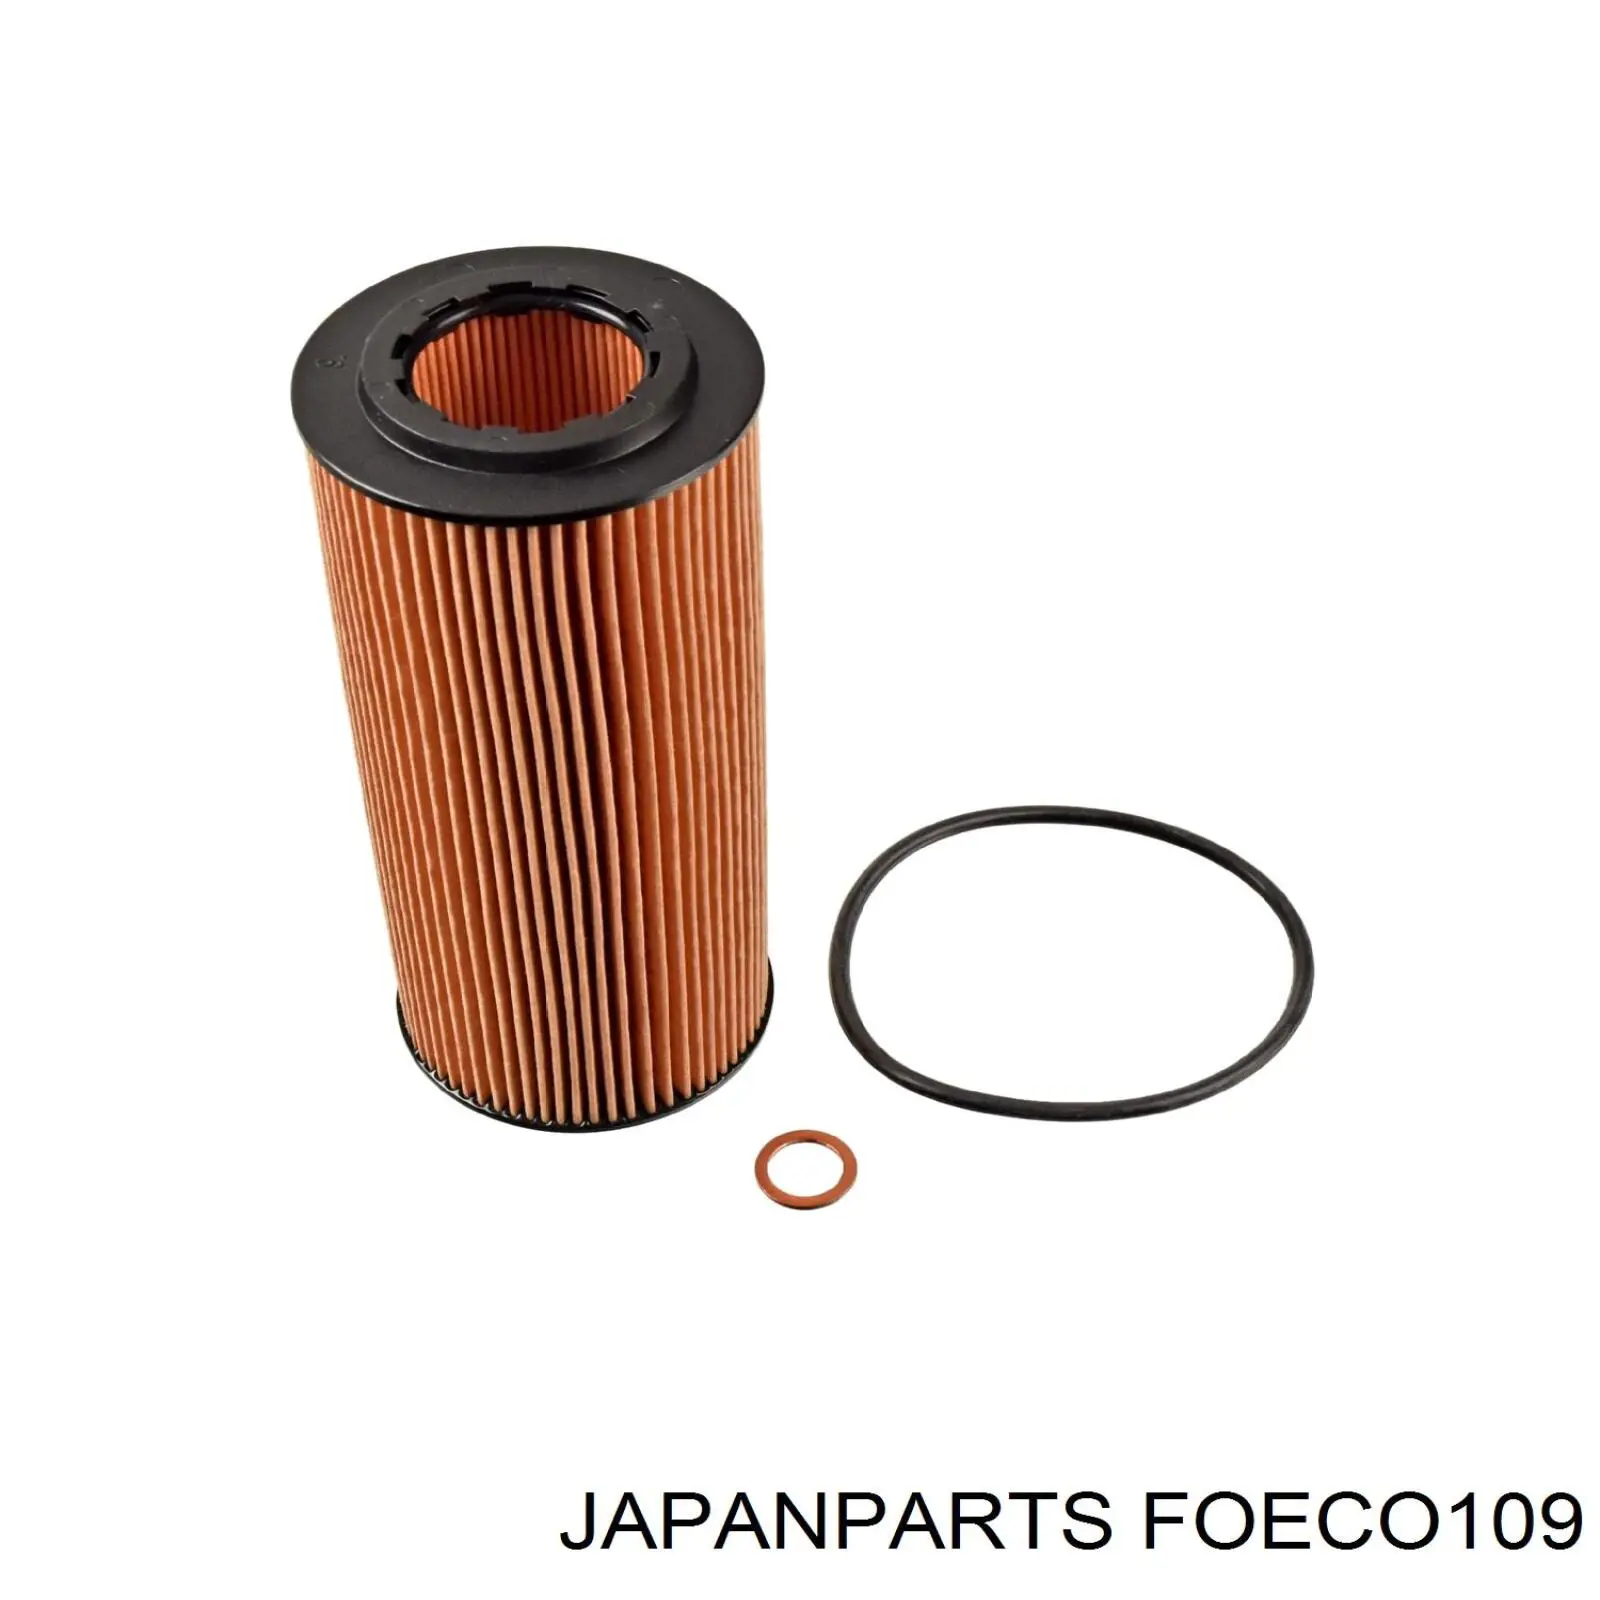 FOECO109 Japan Parts filtro de aceite